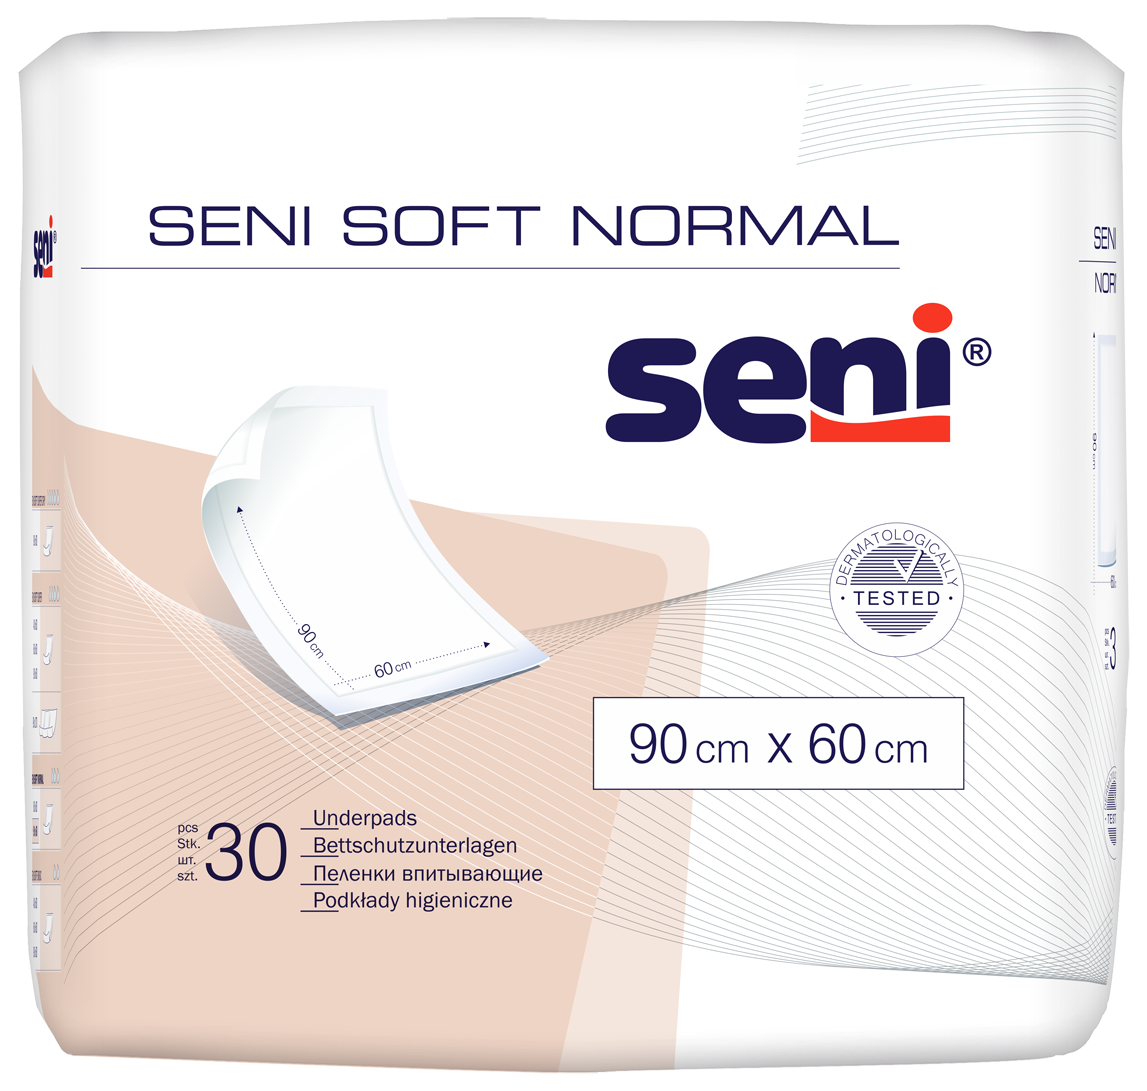 Seni Soft Normal Bettschutzunterlagen 30 Stück